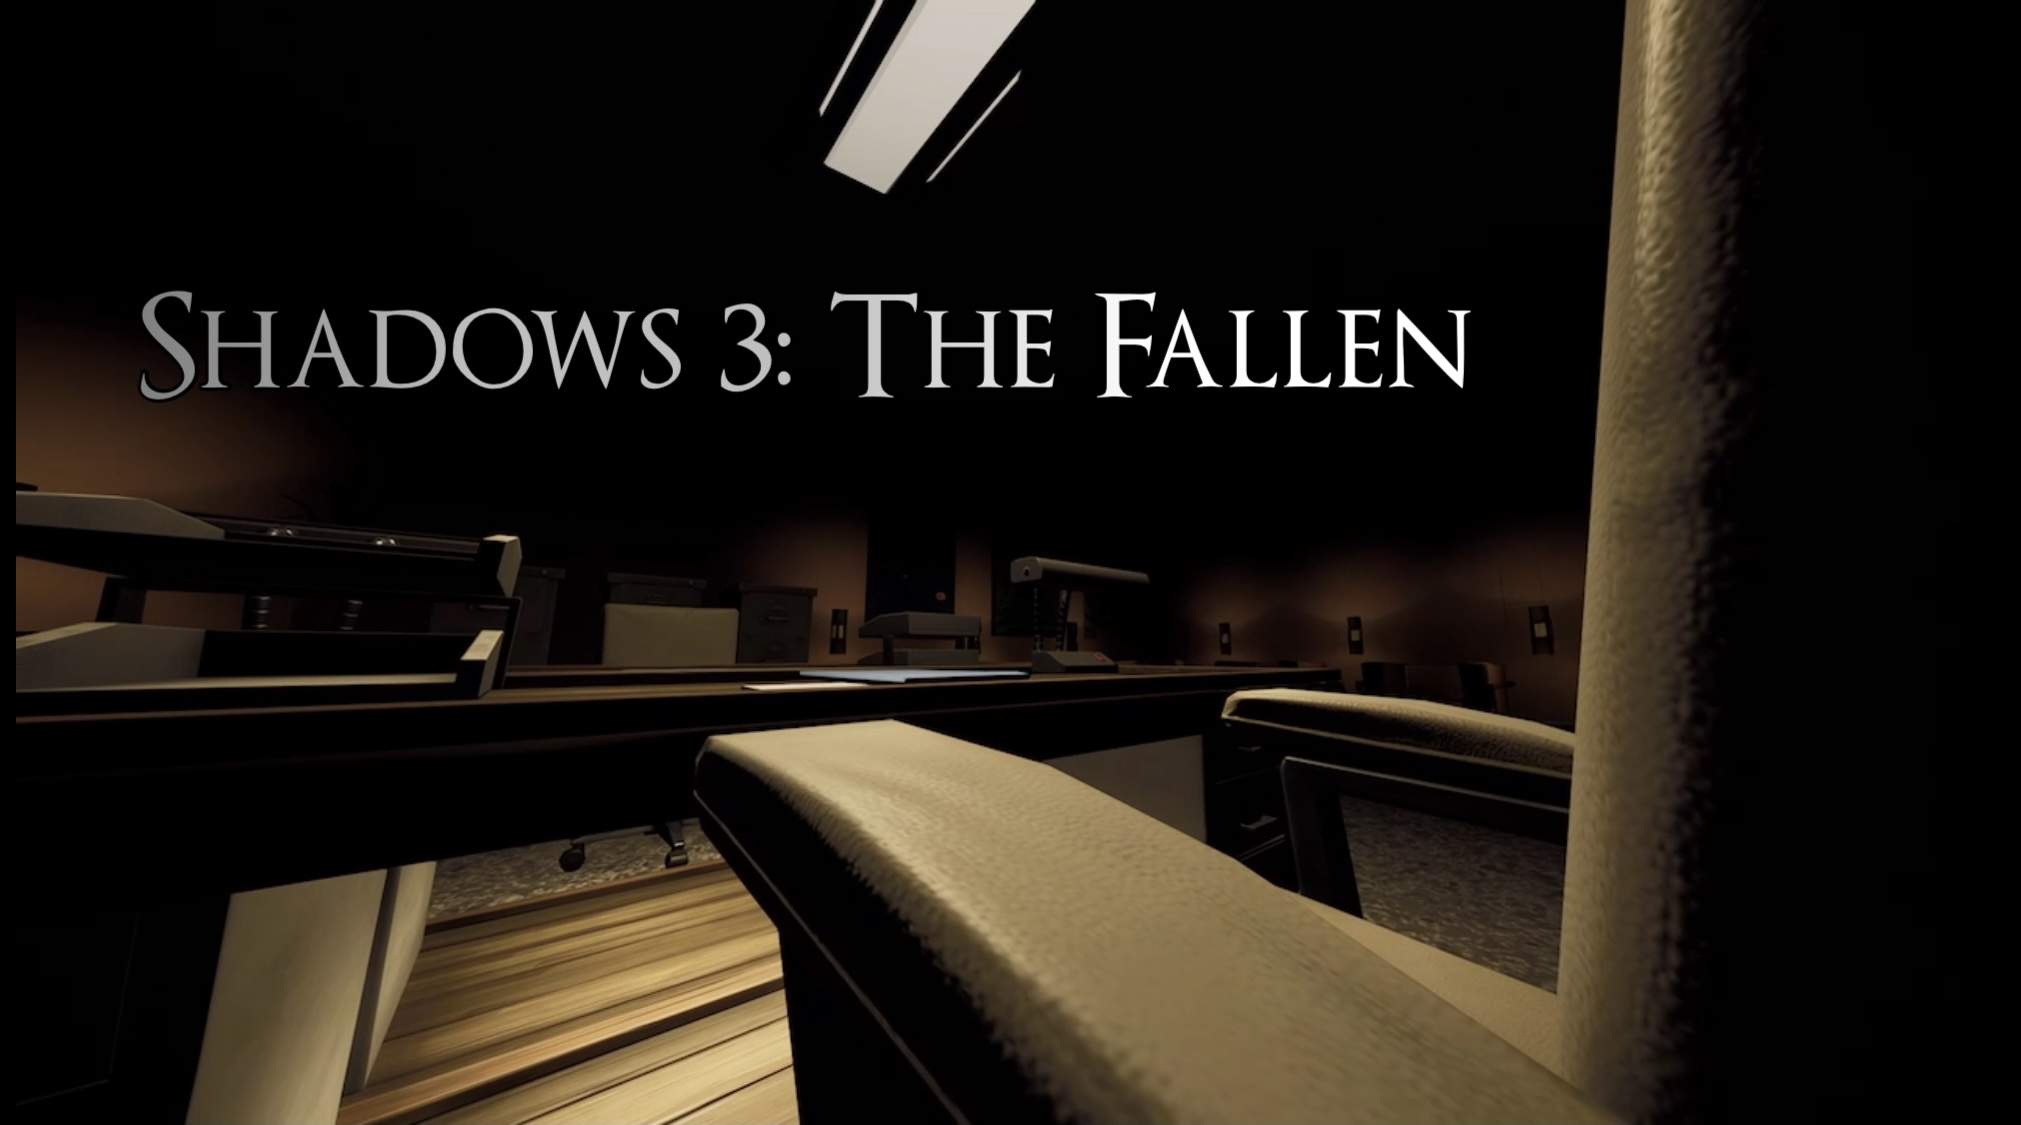 SHADOWS 3: THE FALLEN